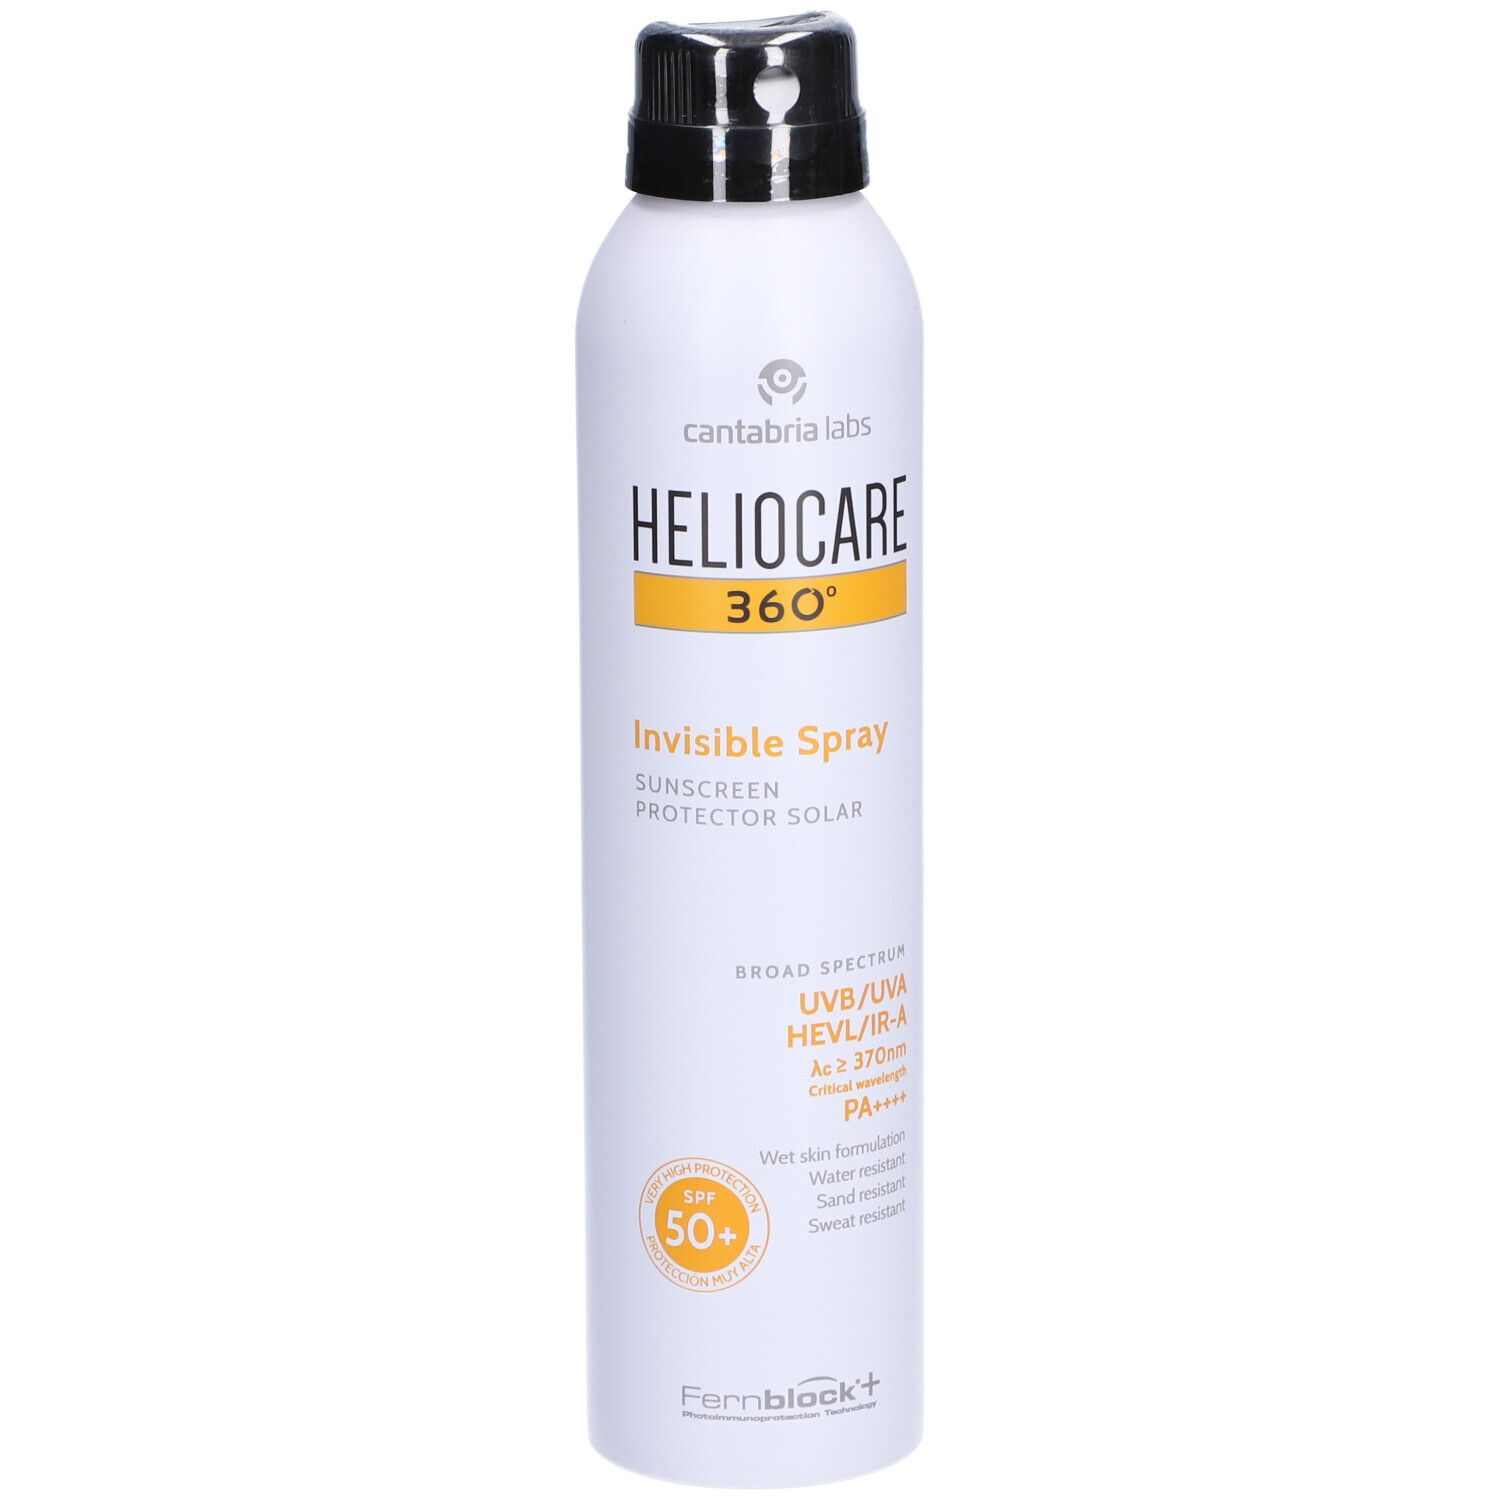 HELIOCARE® 360° Invisible Spray LSF 50+